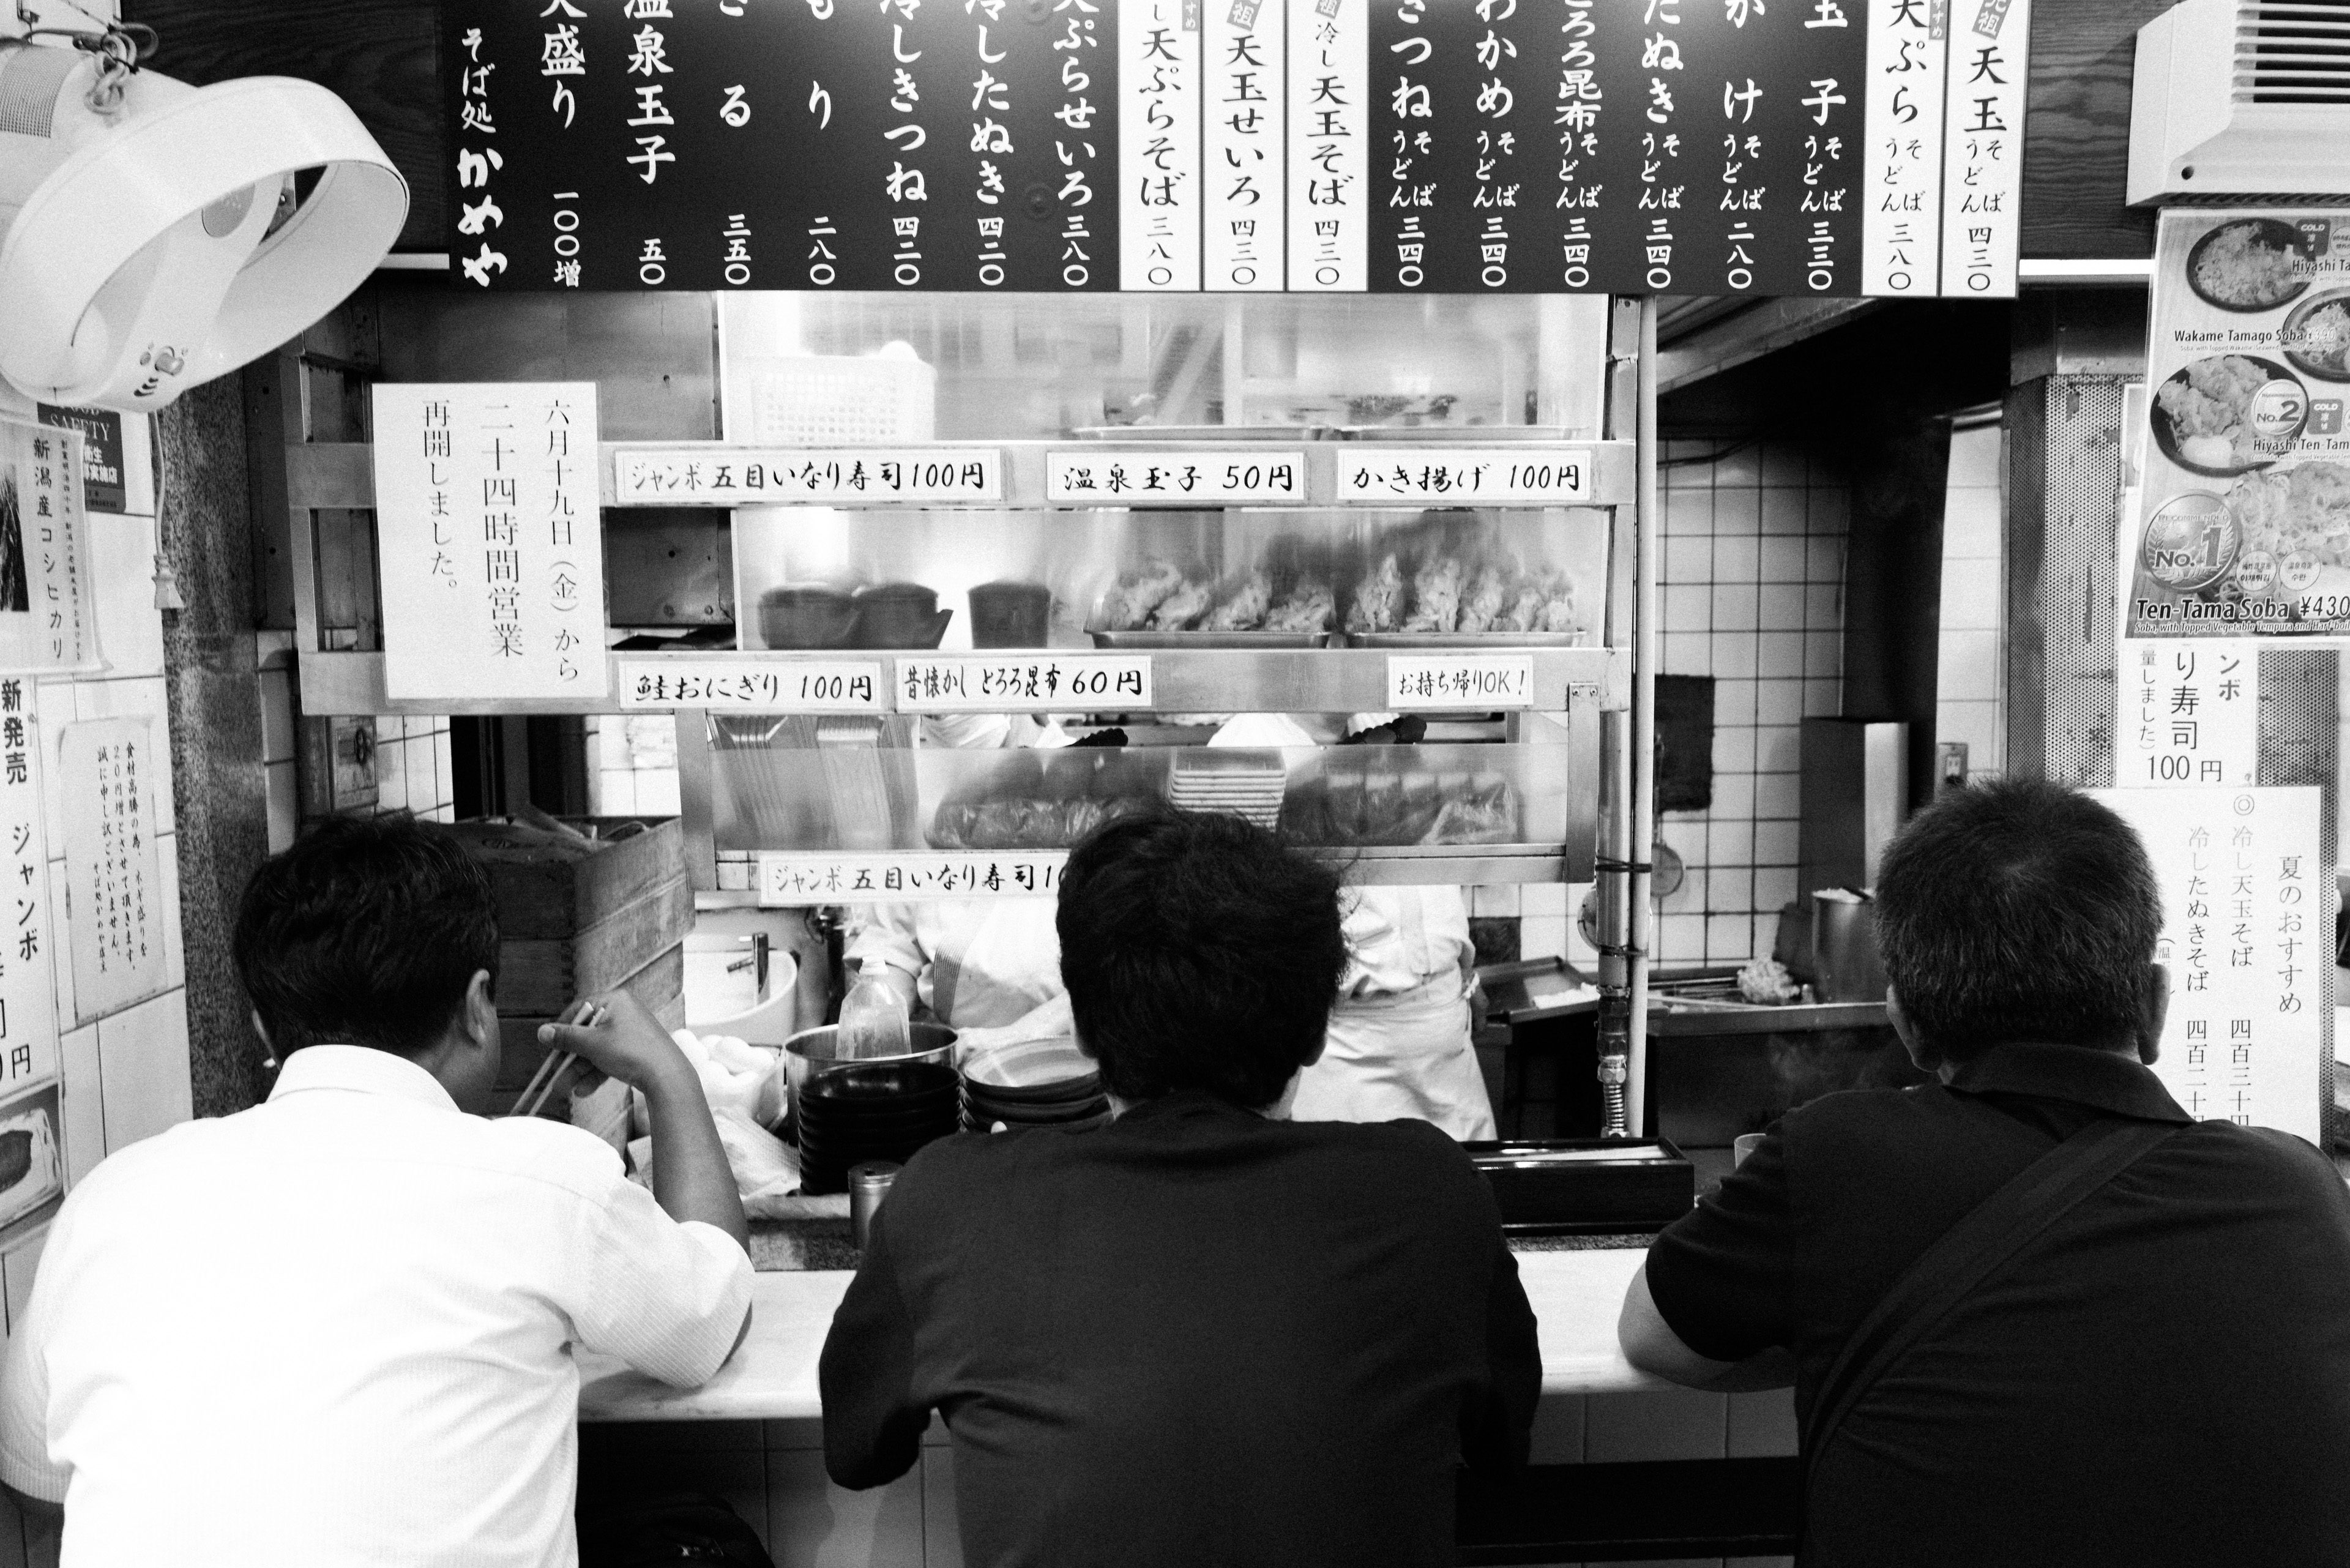 Three men eating ramen in Shinjuku.